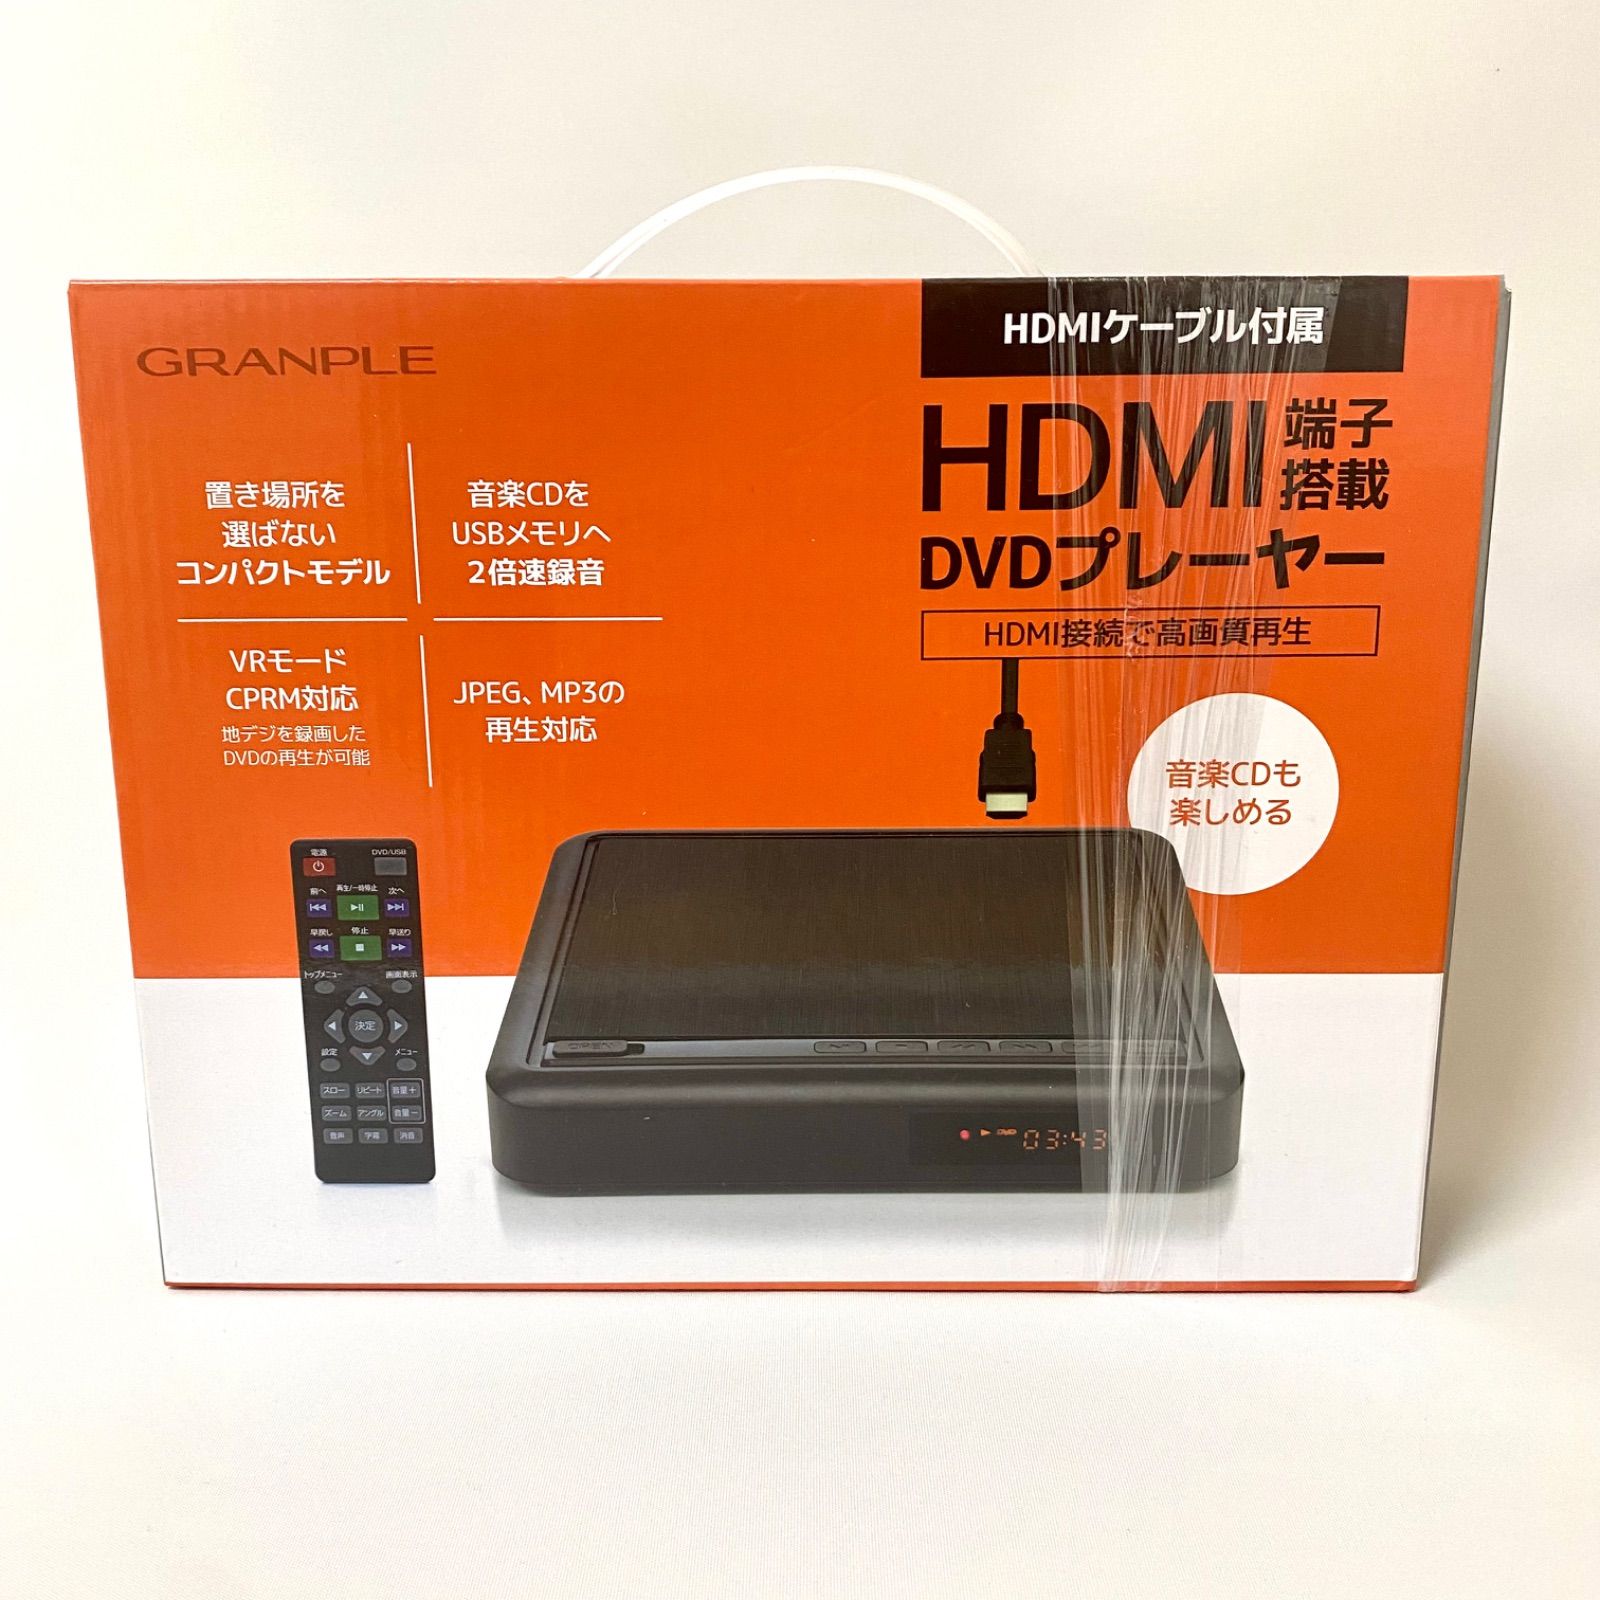 値下げ中 Reiz（レイズ）HDMI端子搭載DVDプレーヤー